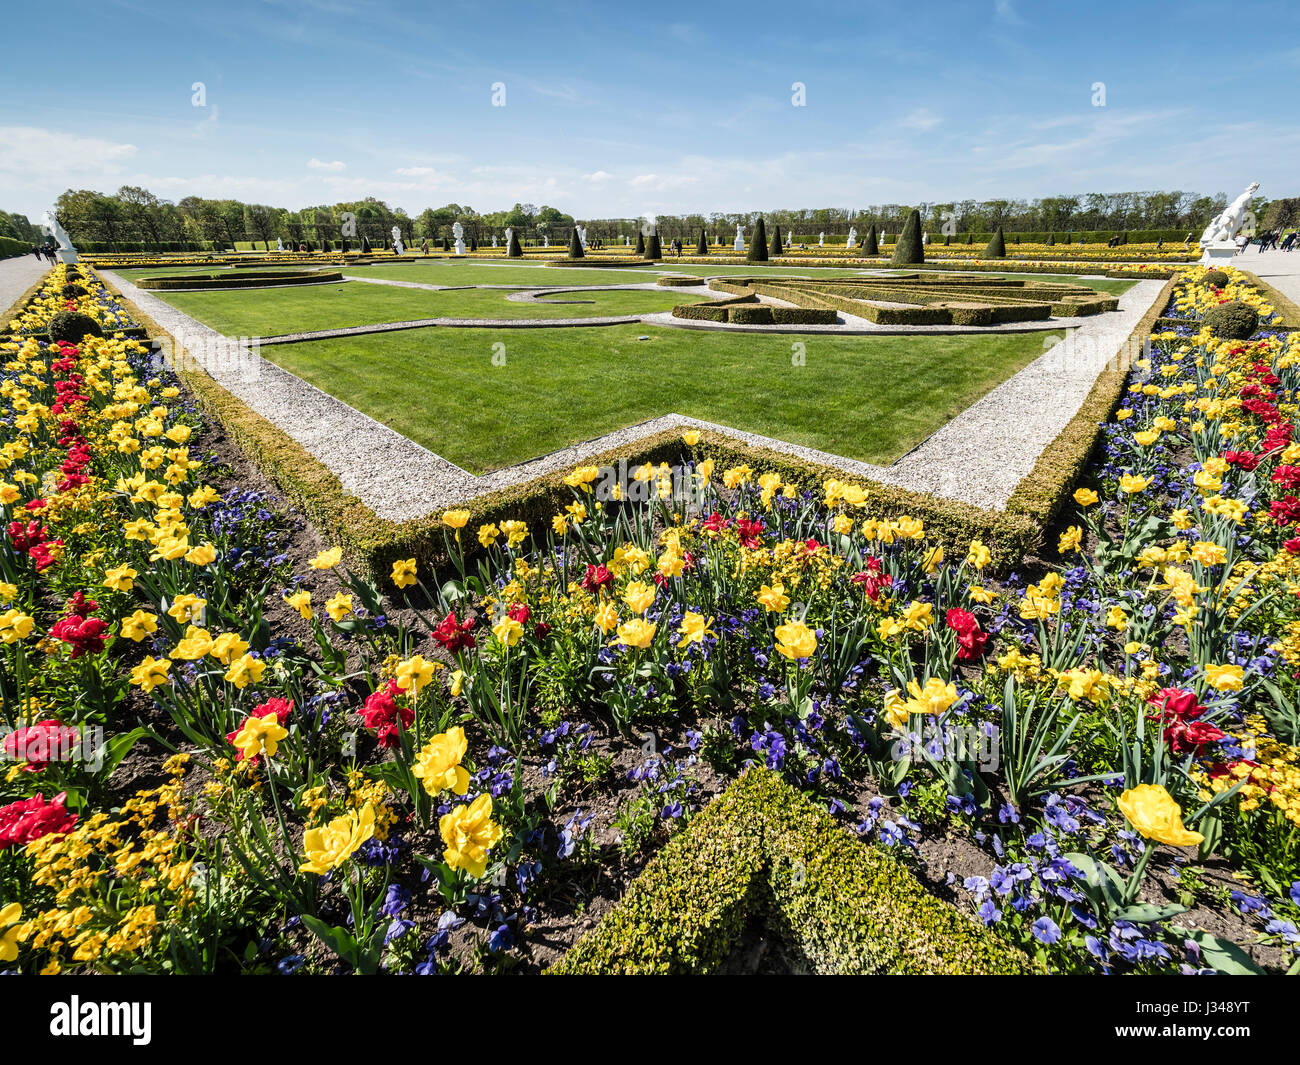 Herrenhaeuser Gaerten, Park am Schloss Herrenhausen, Frühling, Blumen,  Hannover, Deutschland Stockfotografie - Alamy